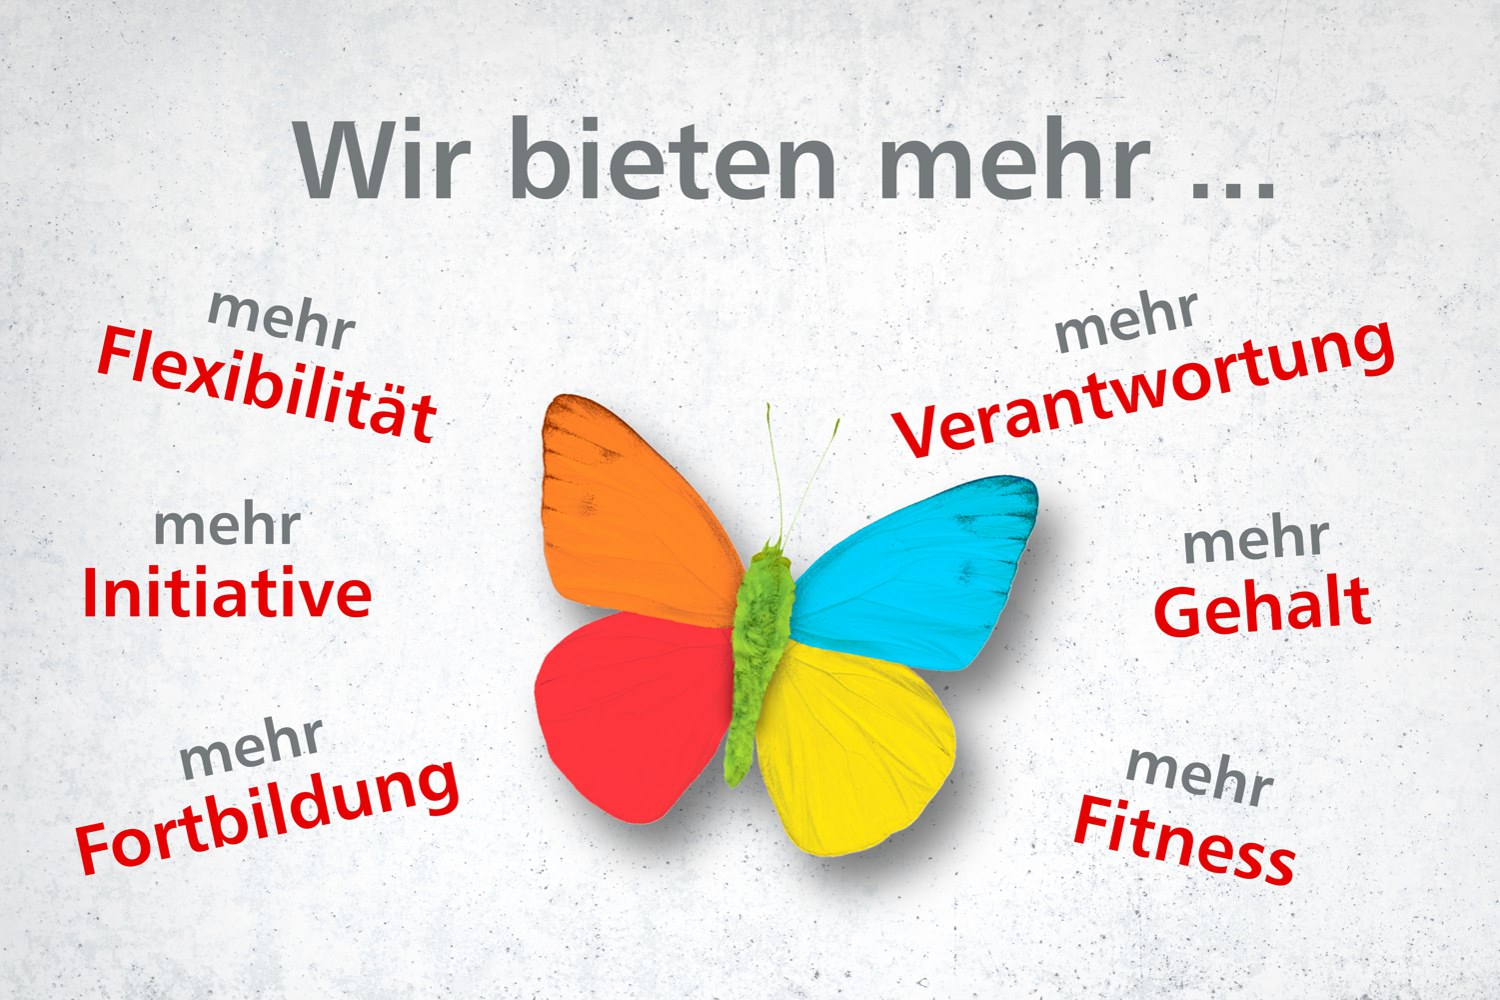 Bild zeigt: Schmetterling in den Farben der Innosozial mit Begriffen zum Motto "Wir bieten mehr"